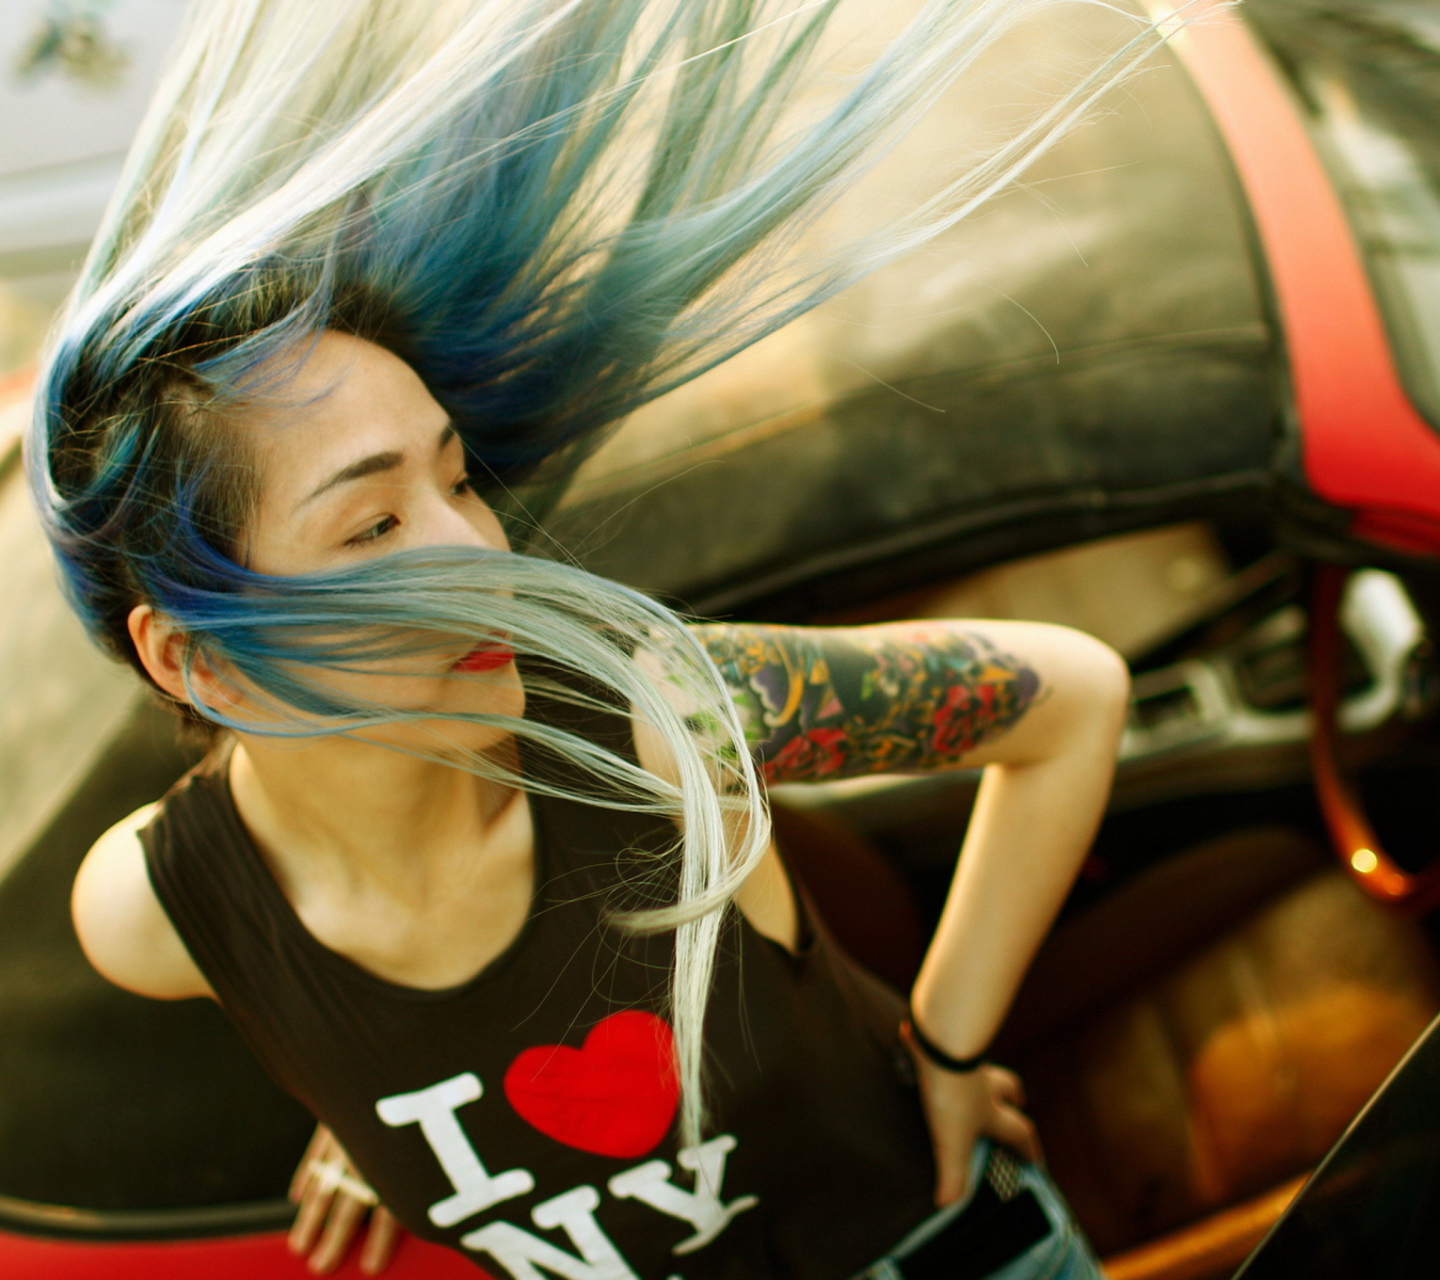 Обои Cool Asian Girl With Blue Hair & I Love NY T-shirt 1440x1280